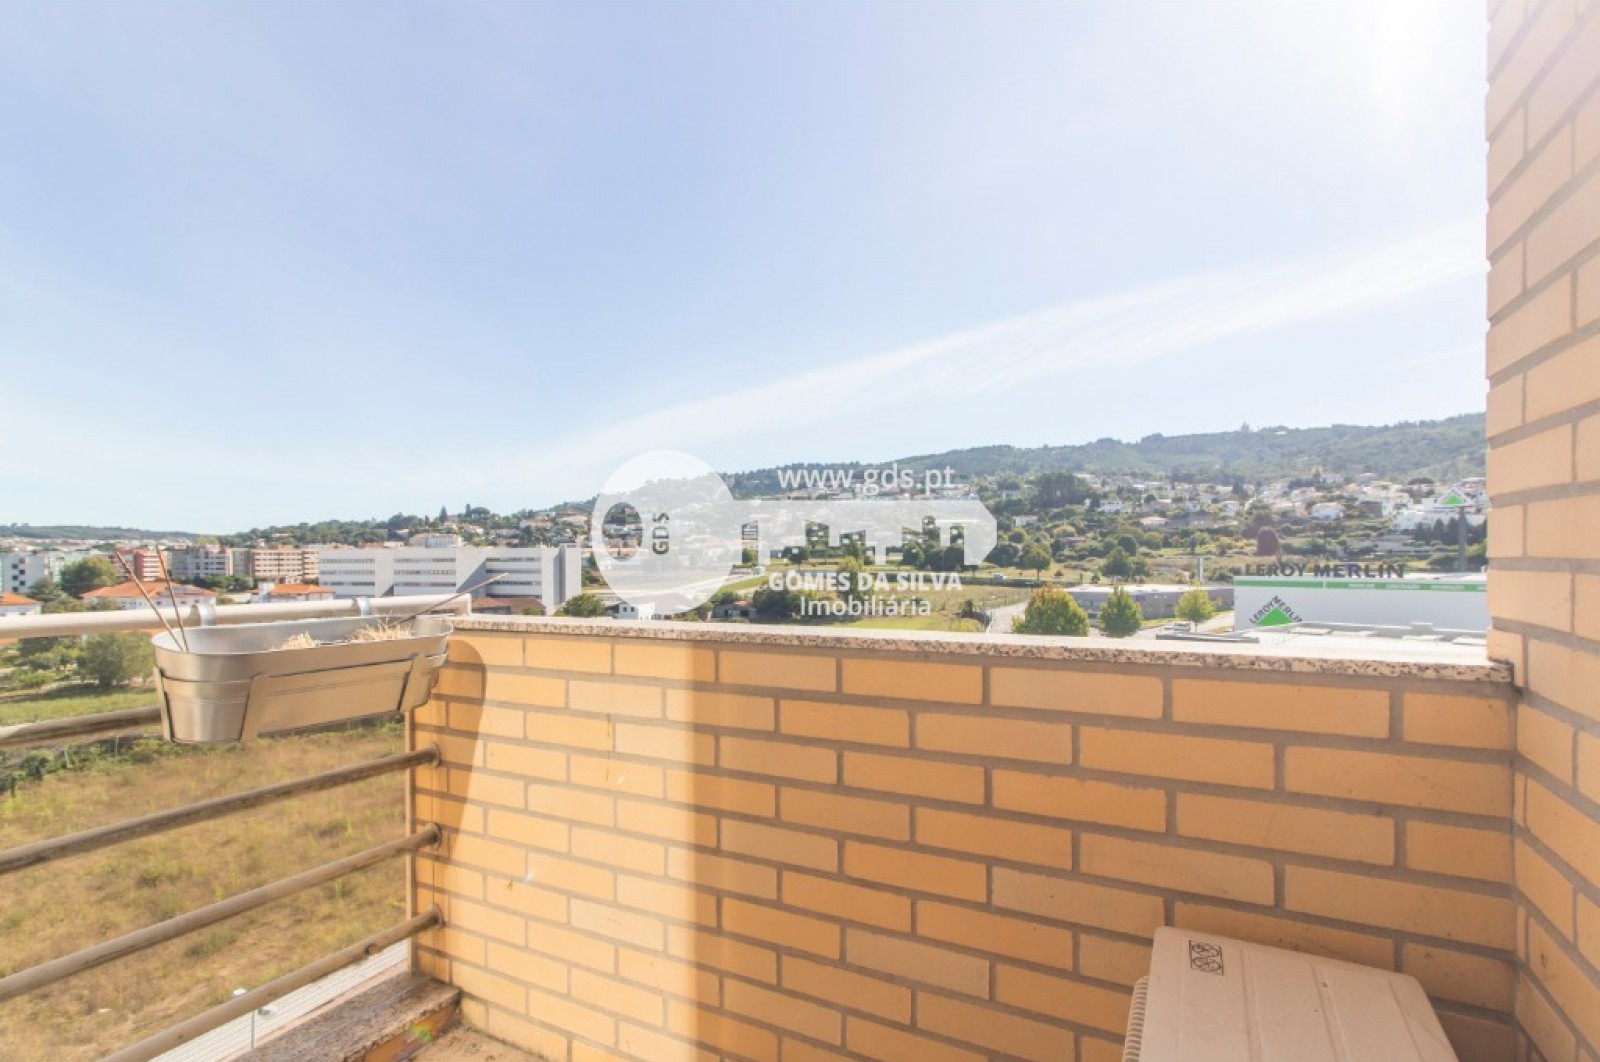 Apartamento T3 para Venda em Nogueira, Fraião e Lamaçães, Braga, Braga - Imagem 13